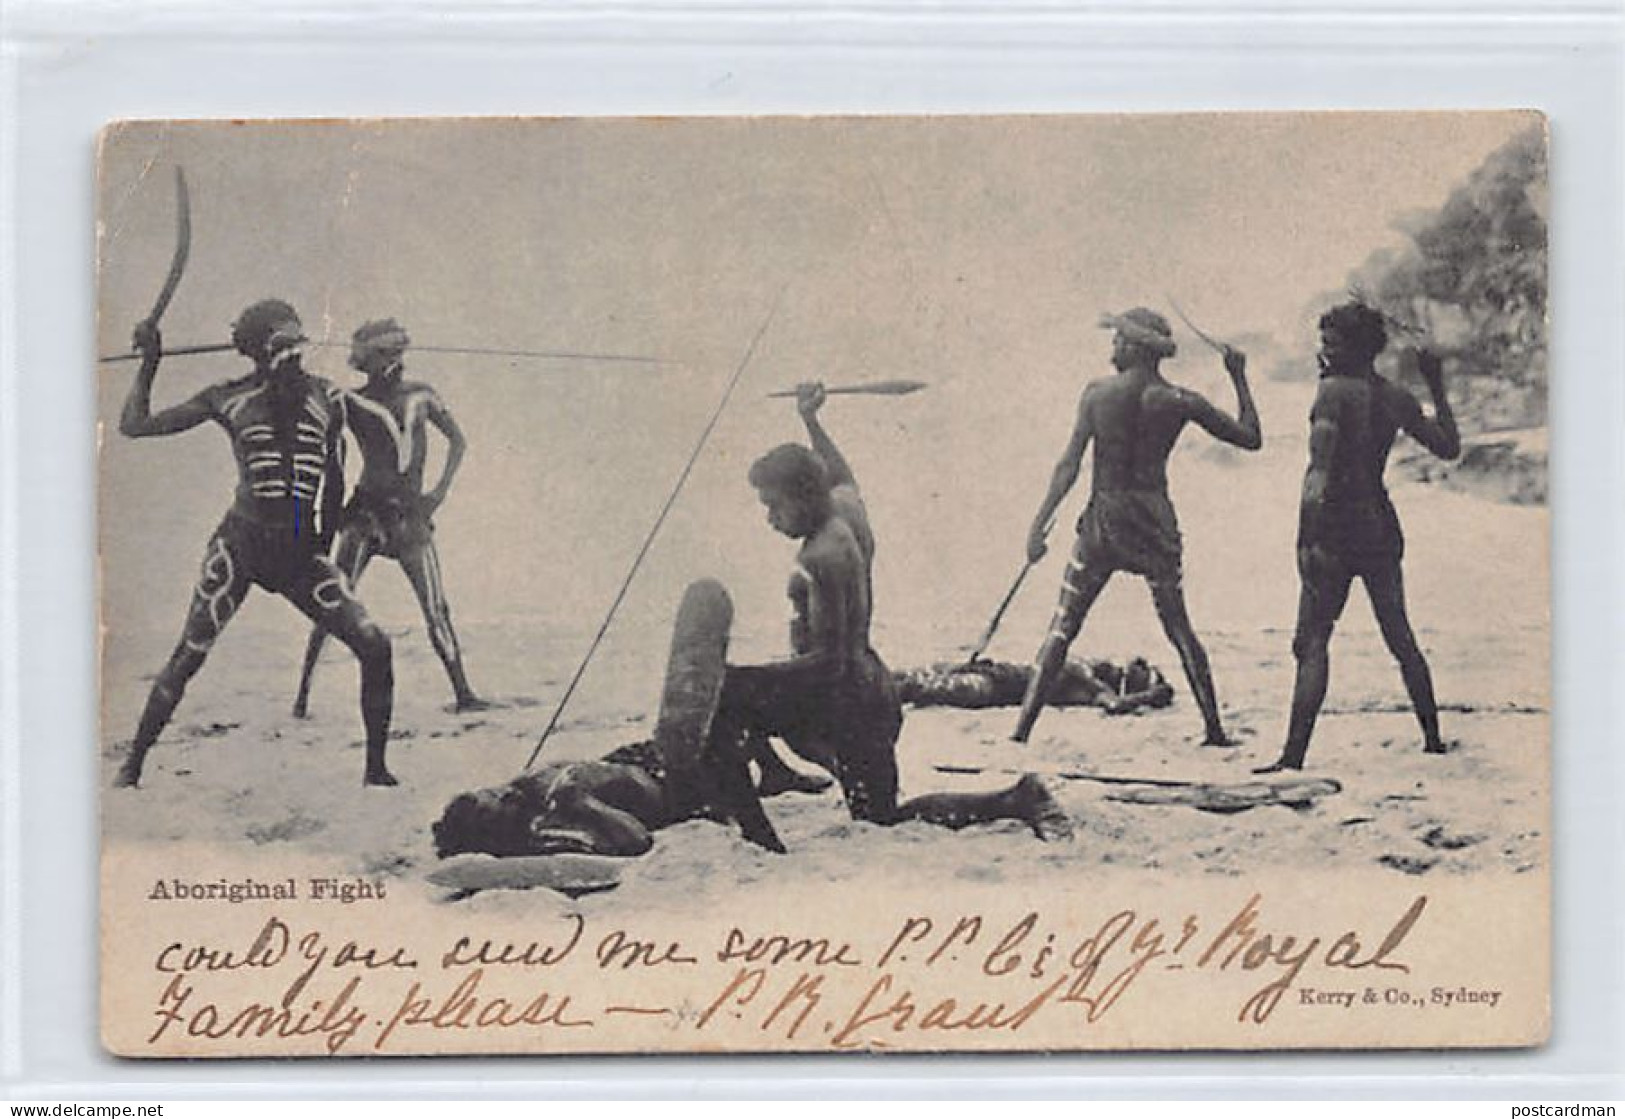 Australia - Aboriginal Fight - Publ. Kerry & Co.  - Aborigines